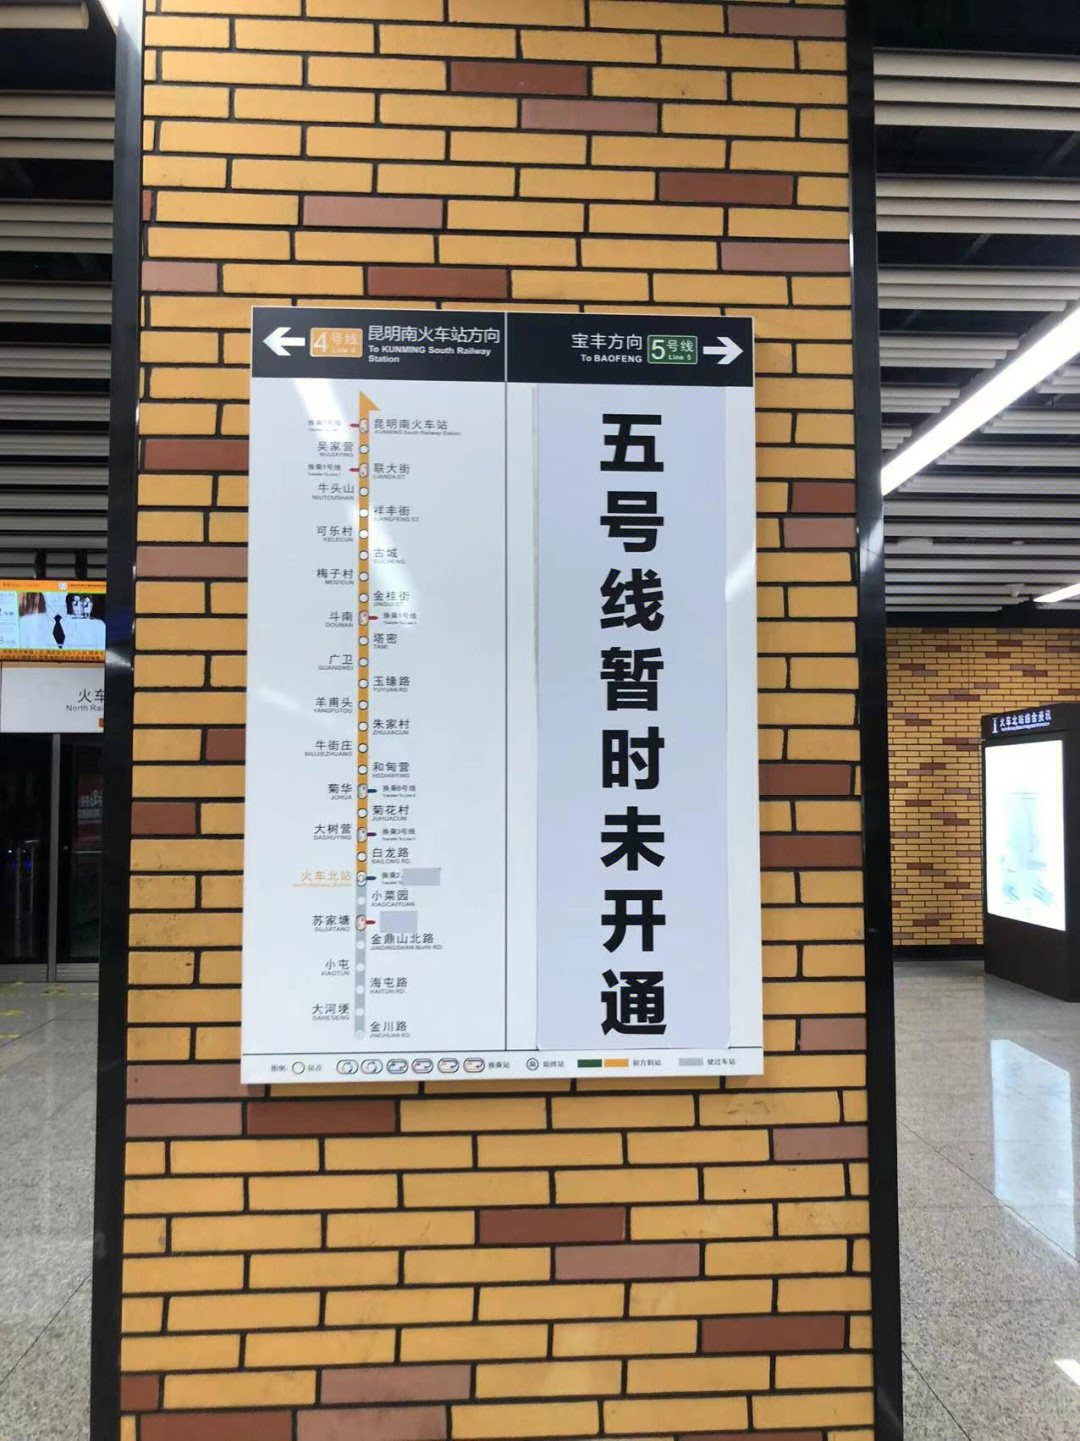 昆明白龙潭站地铁图片